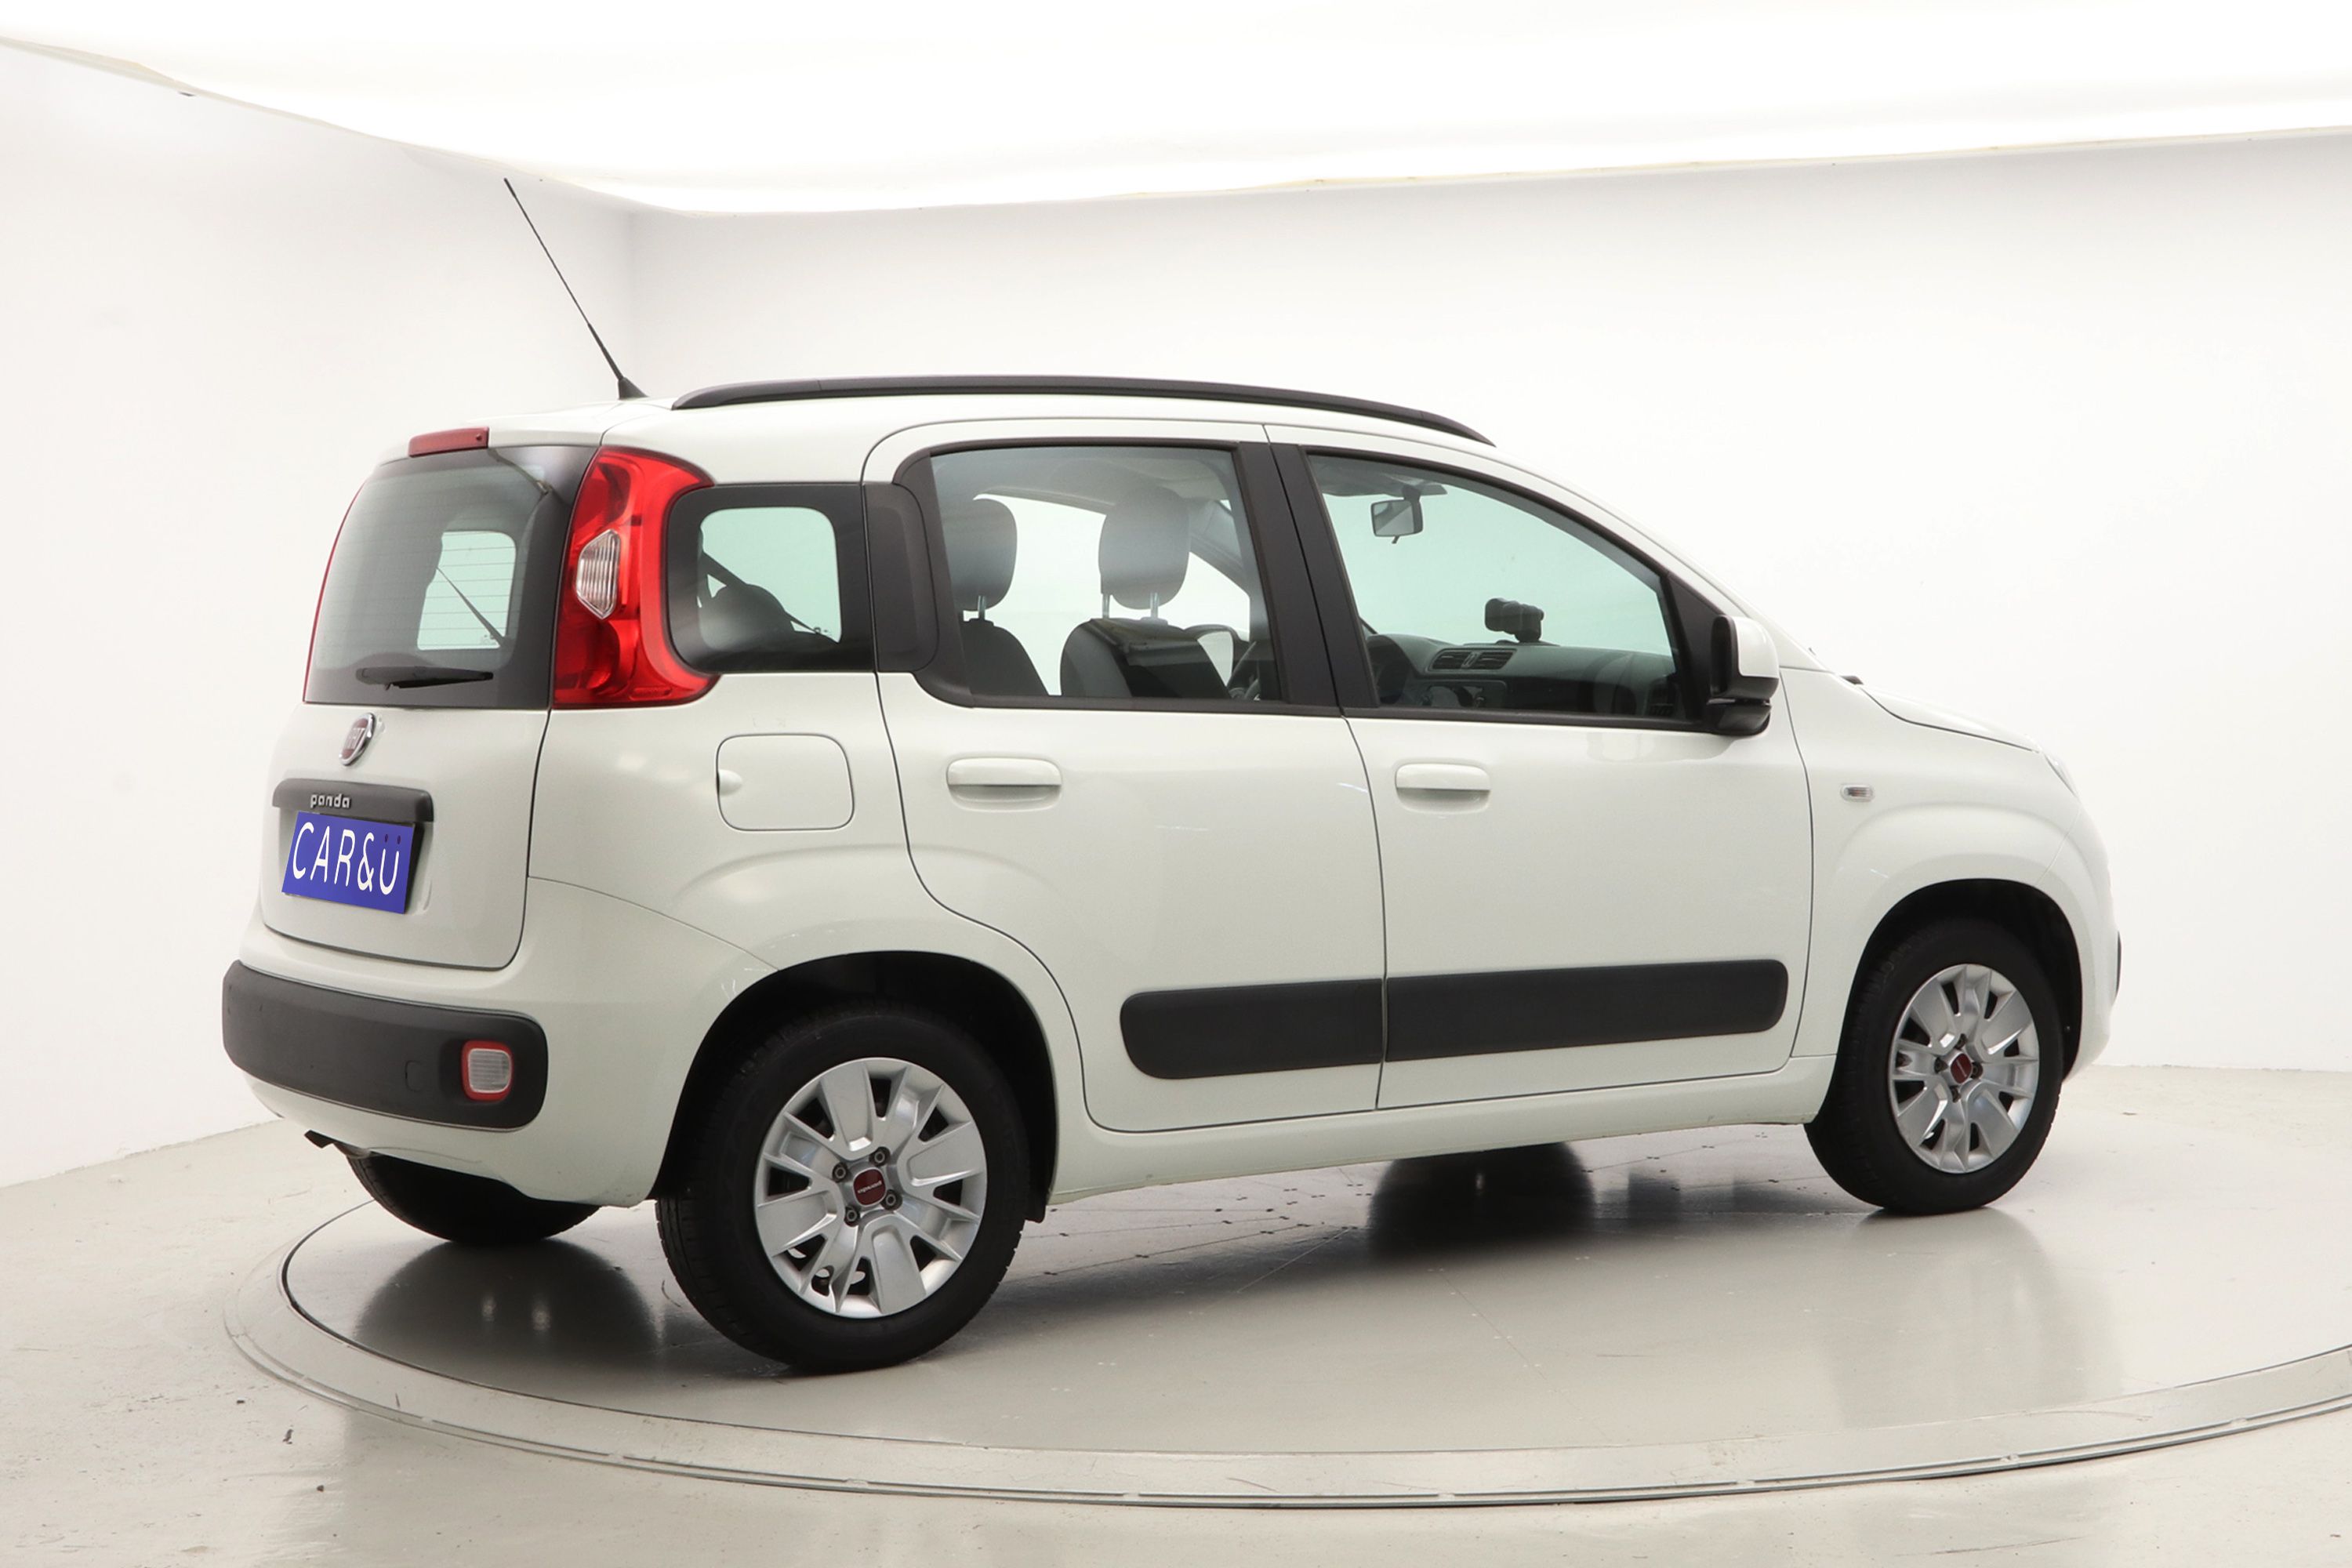 Comprar Fiat Panda 2018 1.2 LOUNGE EU6 69 5P CAR&Ü